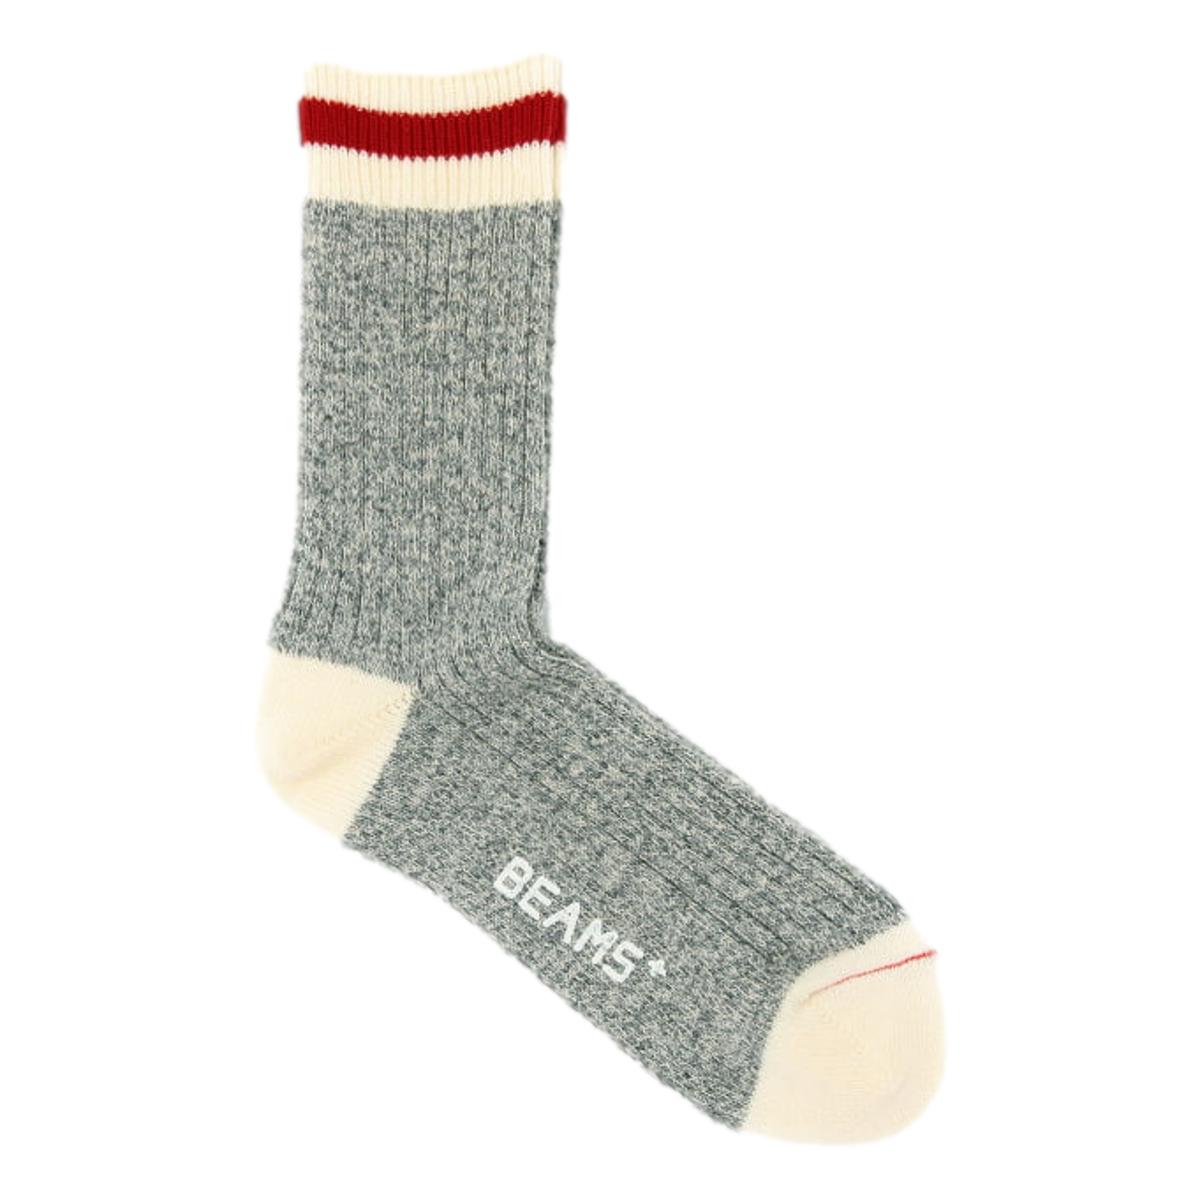 Rag socks Grey - Socks